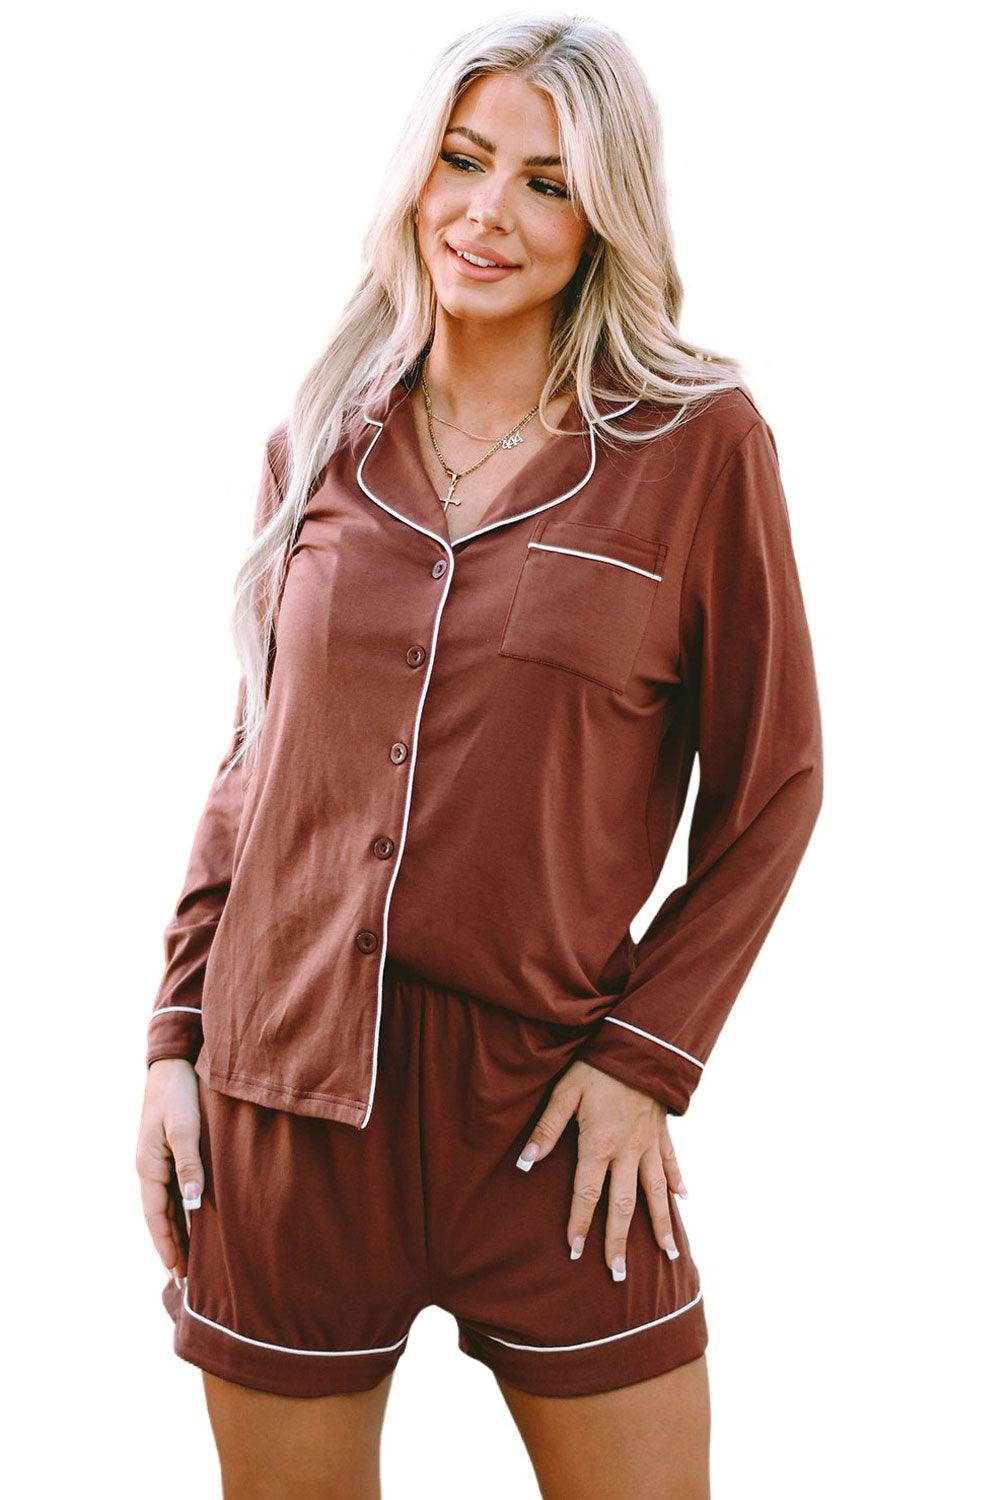 Brown Contrast Pipings Long Sleeve Shorts Pajamas Set - L & M Kee, LLC